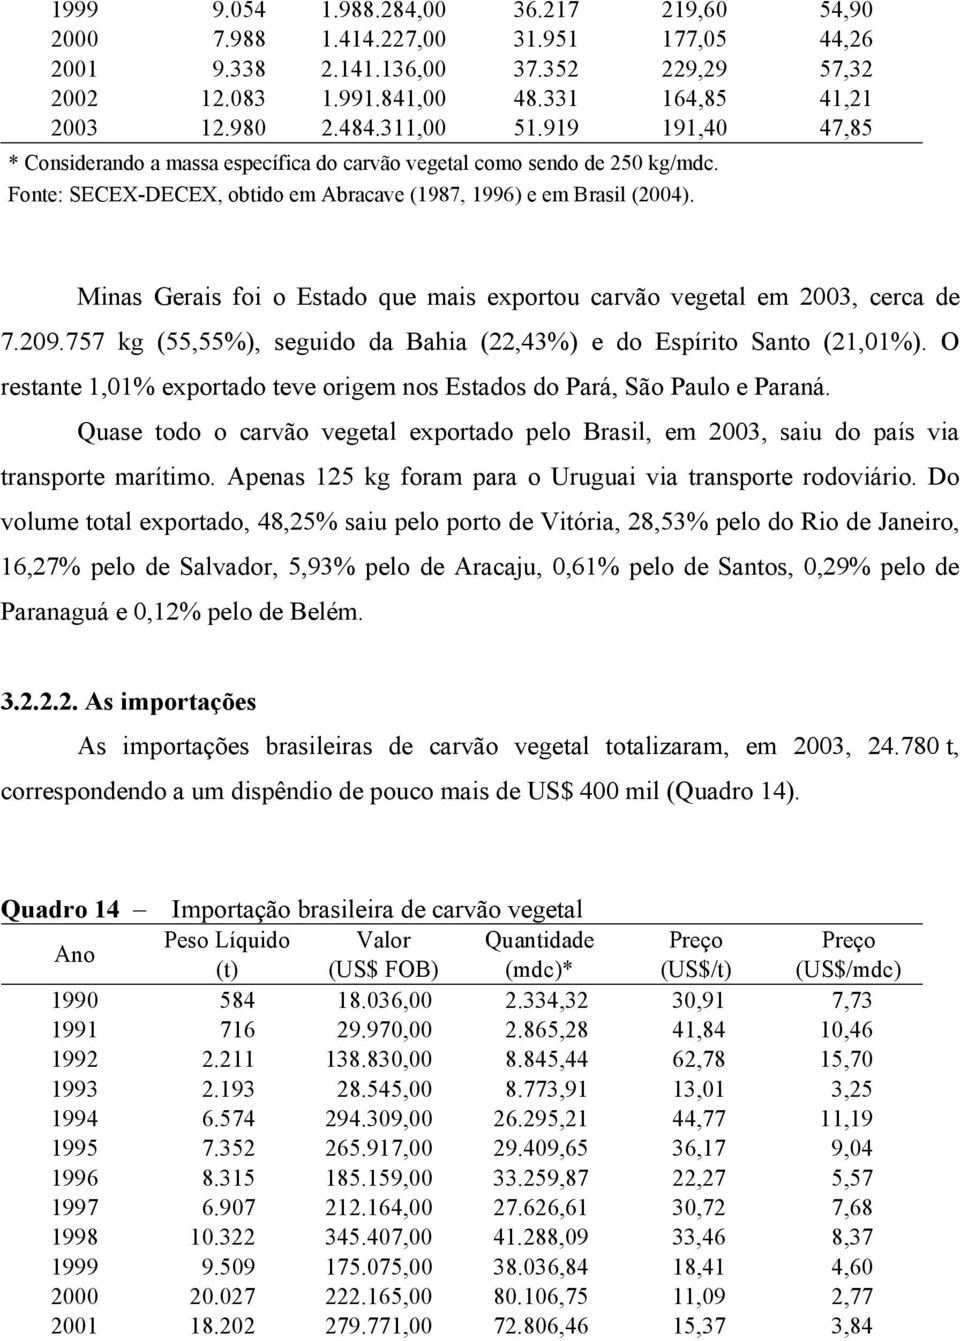 Minas Gerais foi o Estado que mais exportou carvão vegetal em 2003, cerca de 7.209.757 kg (55,55%), seguido da Bahia (22,43%) e do Espírito Santo (21,01%).